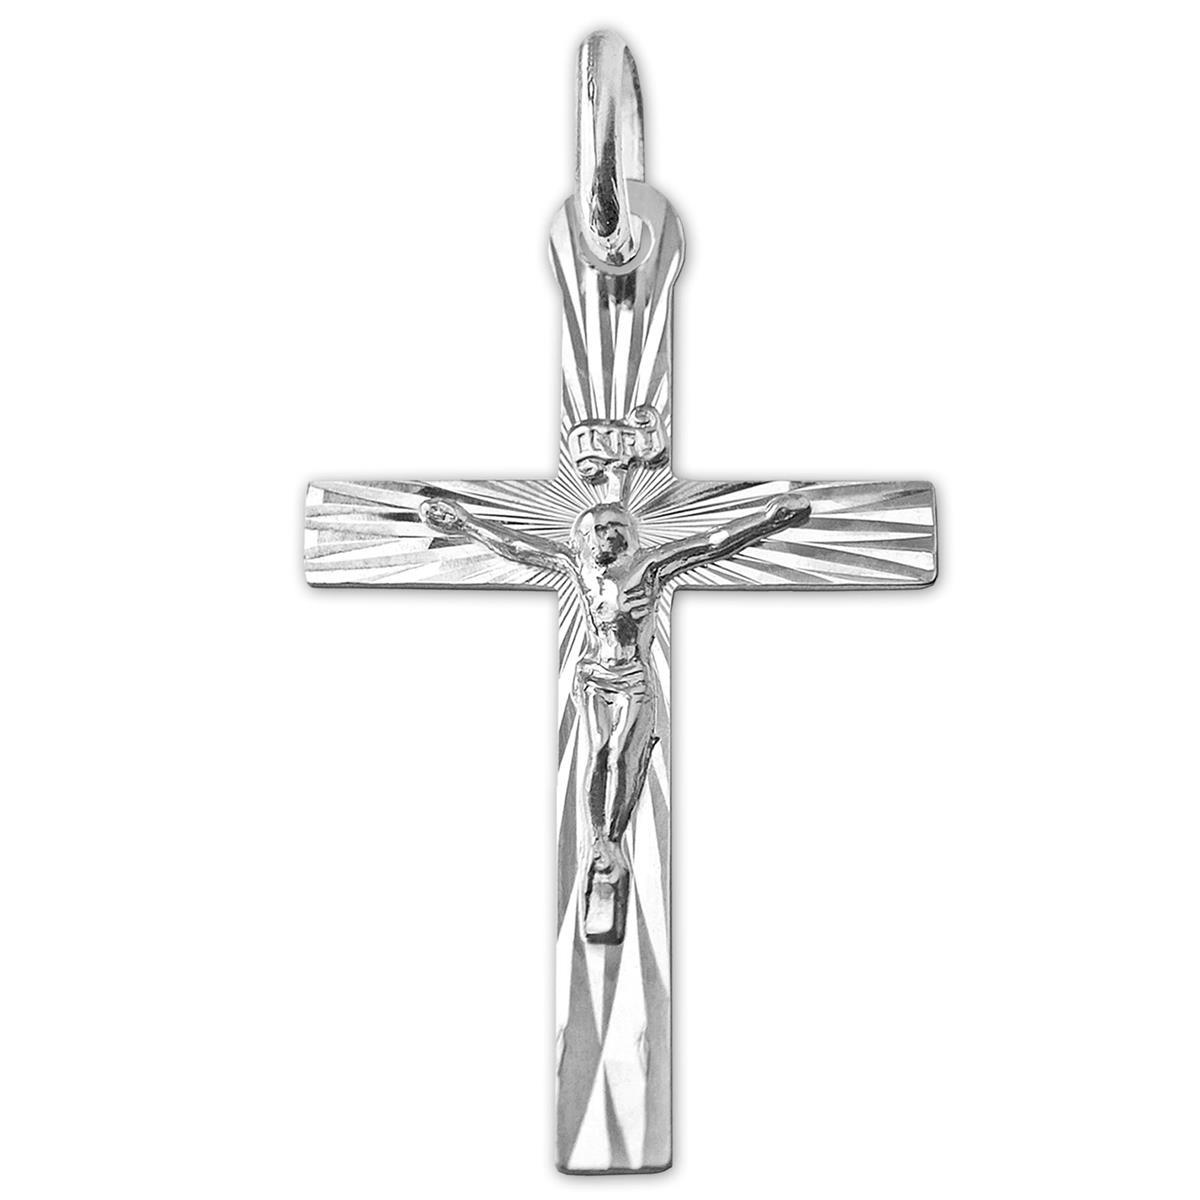 Kreuz 33 mm flach mit Jesus strahlenförmig diamantiert STERLING SILBER 925